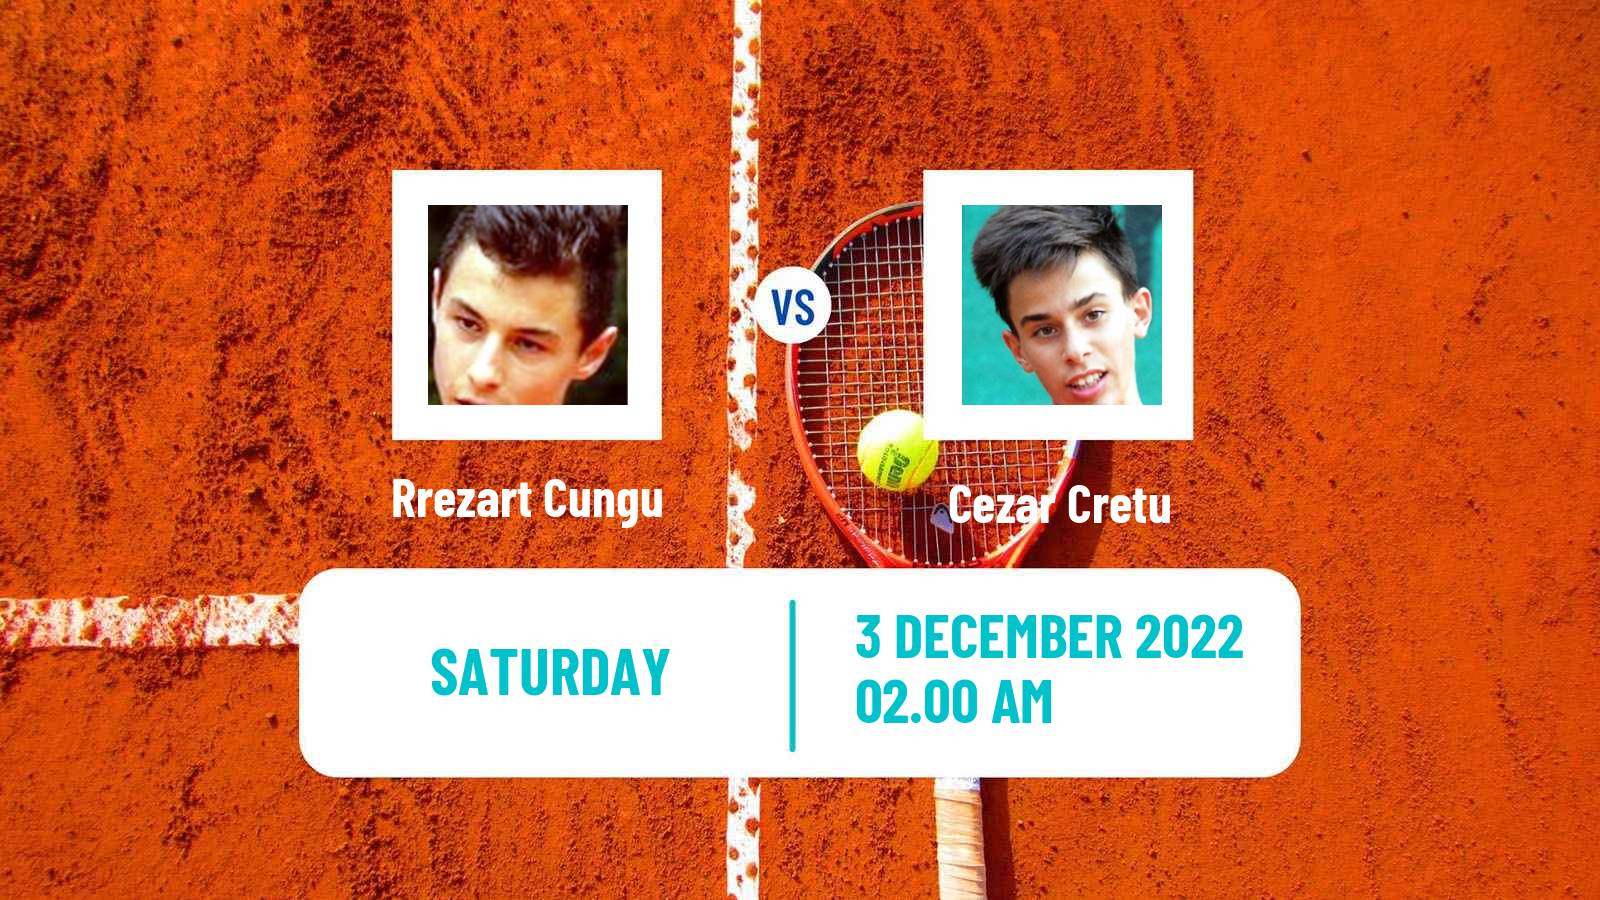 Tennis ITF Tournaments Rrezart Cungu - Cezar Cretu